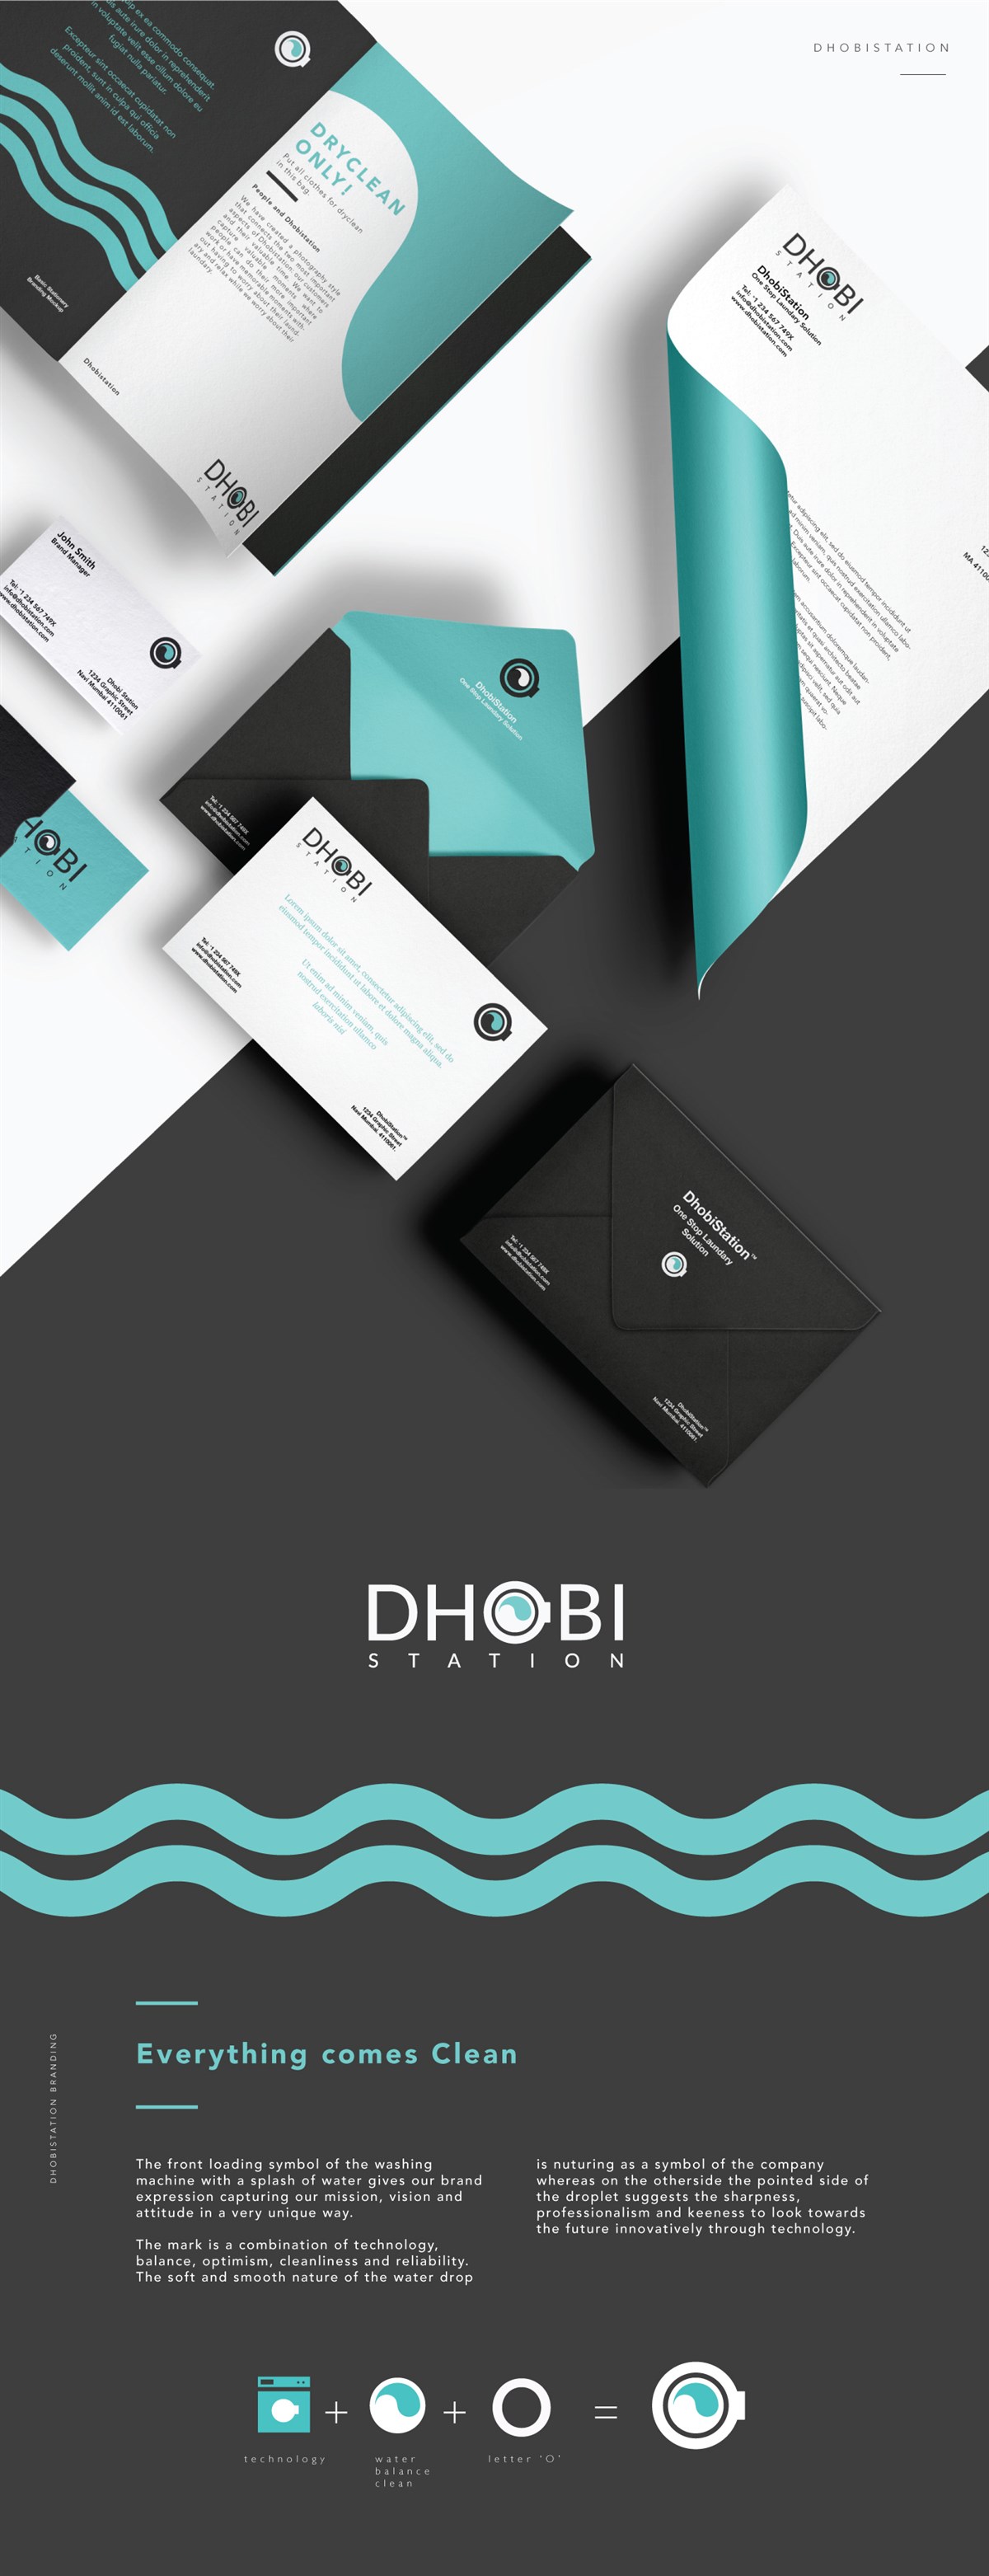 一站式洗衣液Dhobistation品牌设计